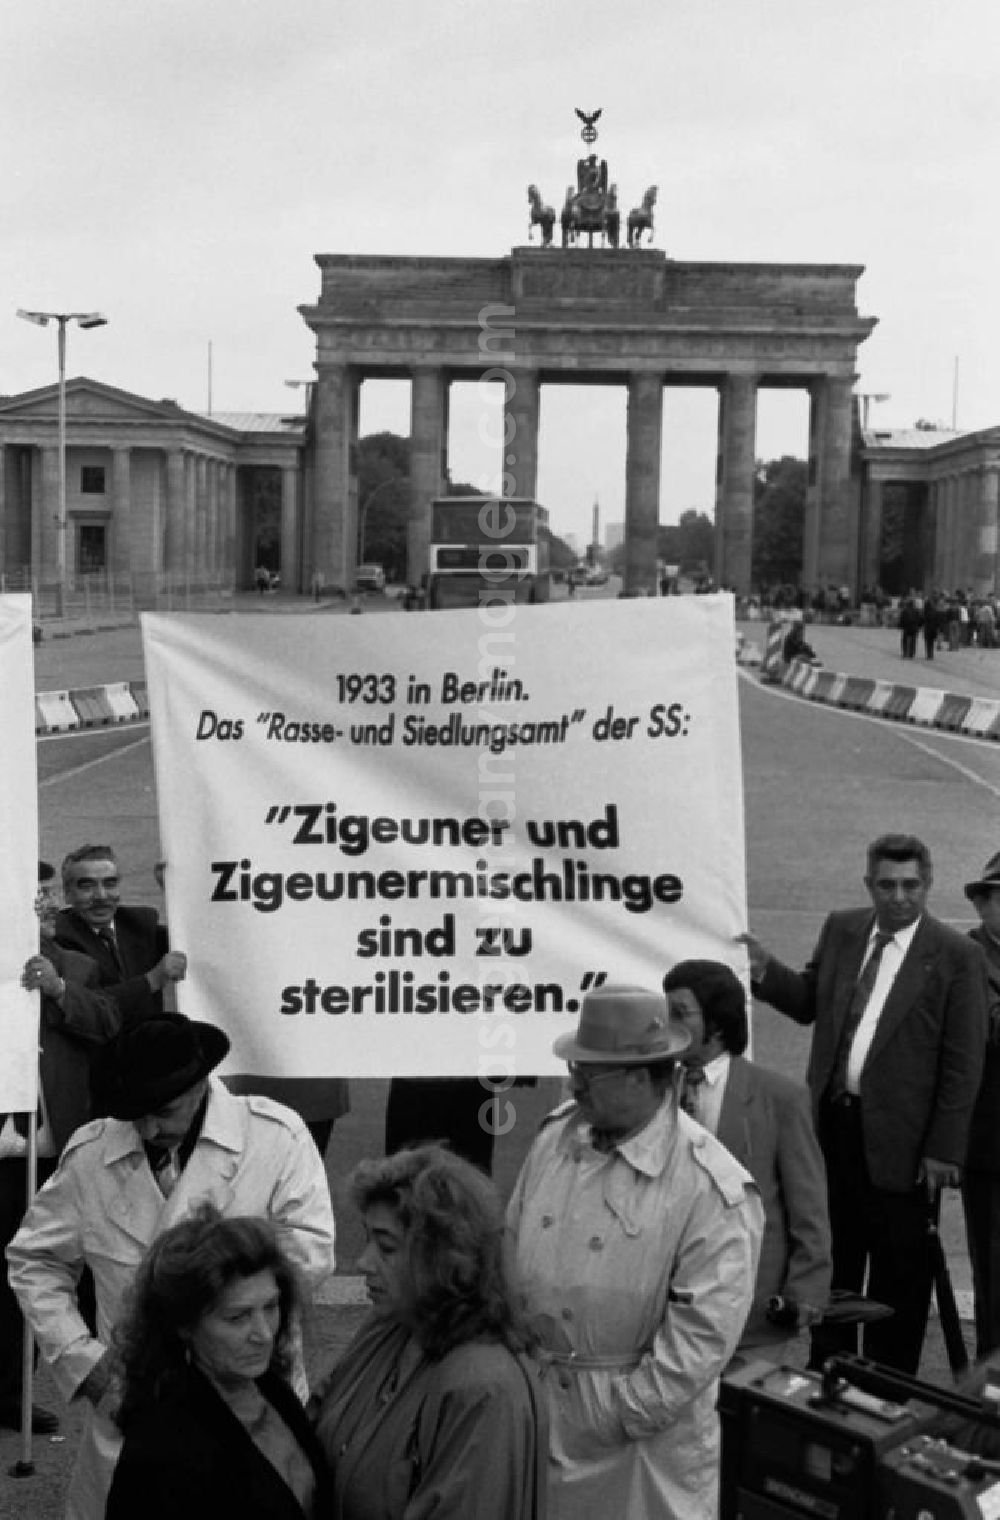 Berlin-Mitte: Sintis und Roma demonstrieren auf dem Pariser Platz vor dem Brandenburger Tor. Demonstranten stehen zusammen und halten Plakat.